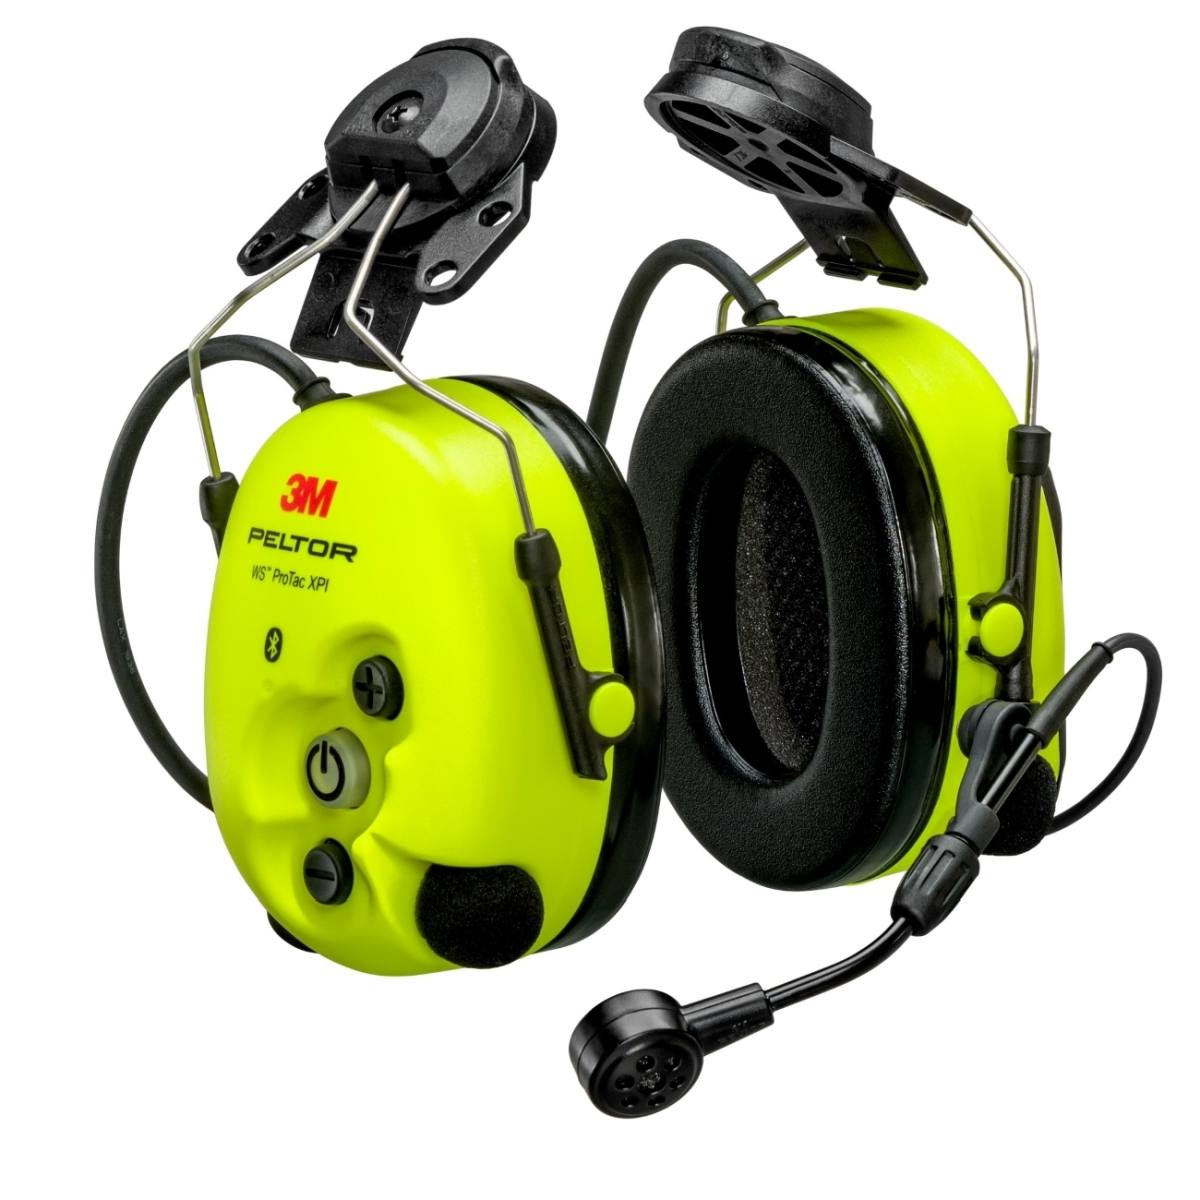 3M PELTOR WS ProTac XPI cuffie di protezione dell'udito FLX2, attacco al casco, Bluetooth, giallo, MT15H7P3EWS6-111